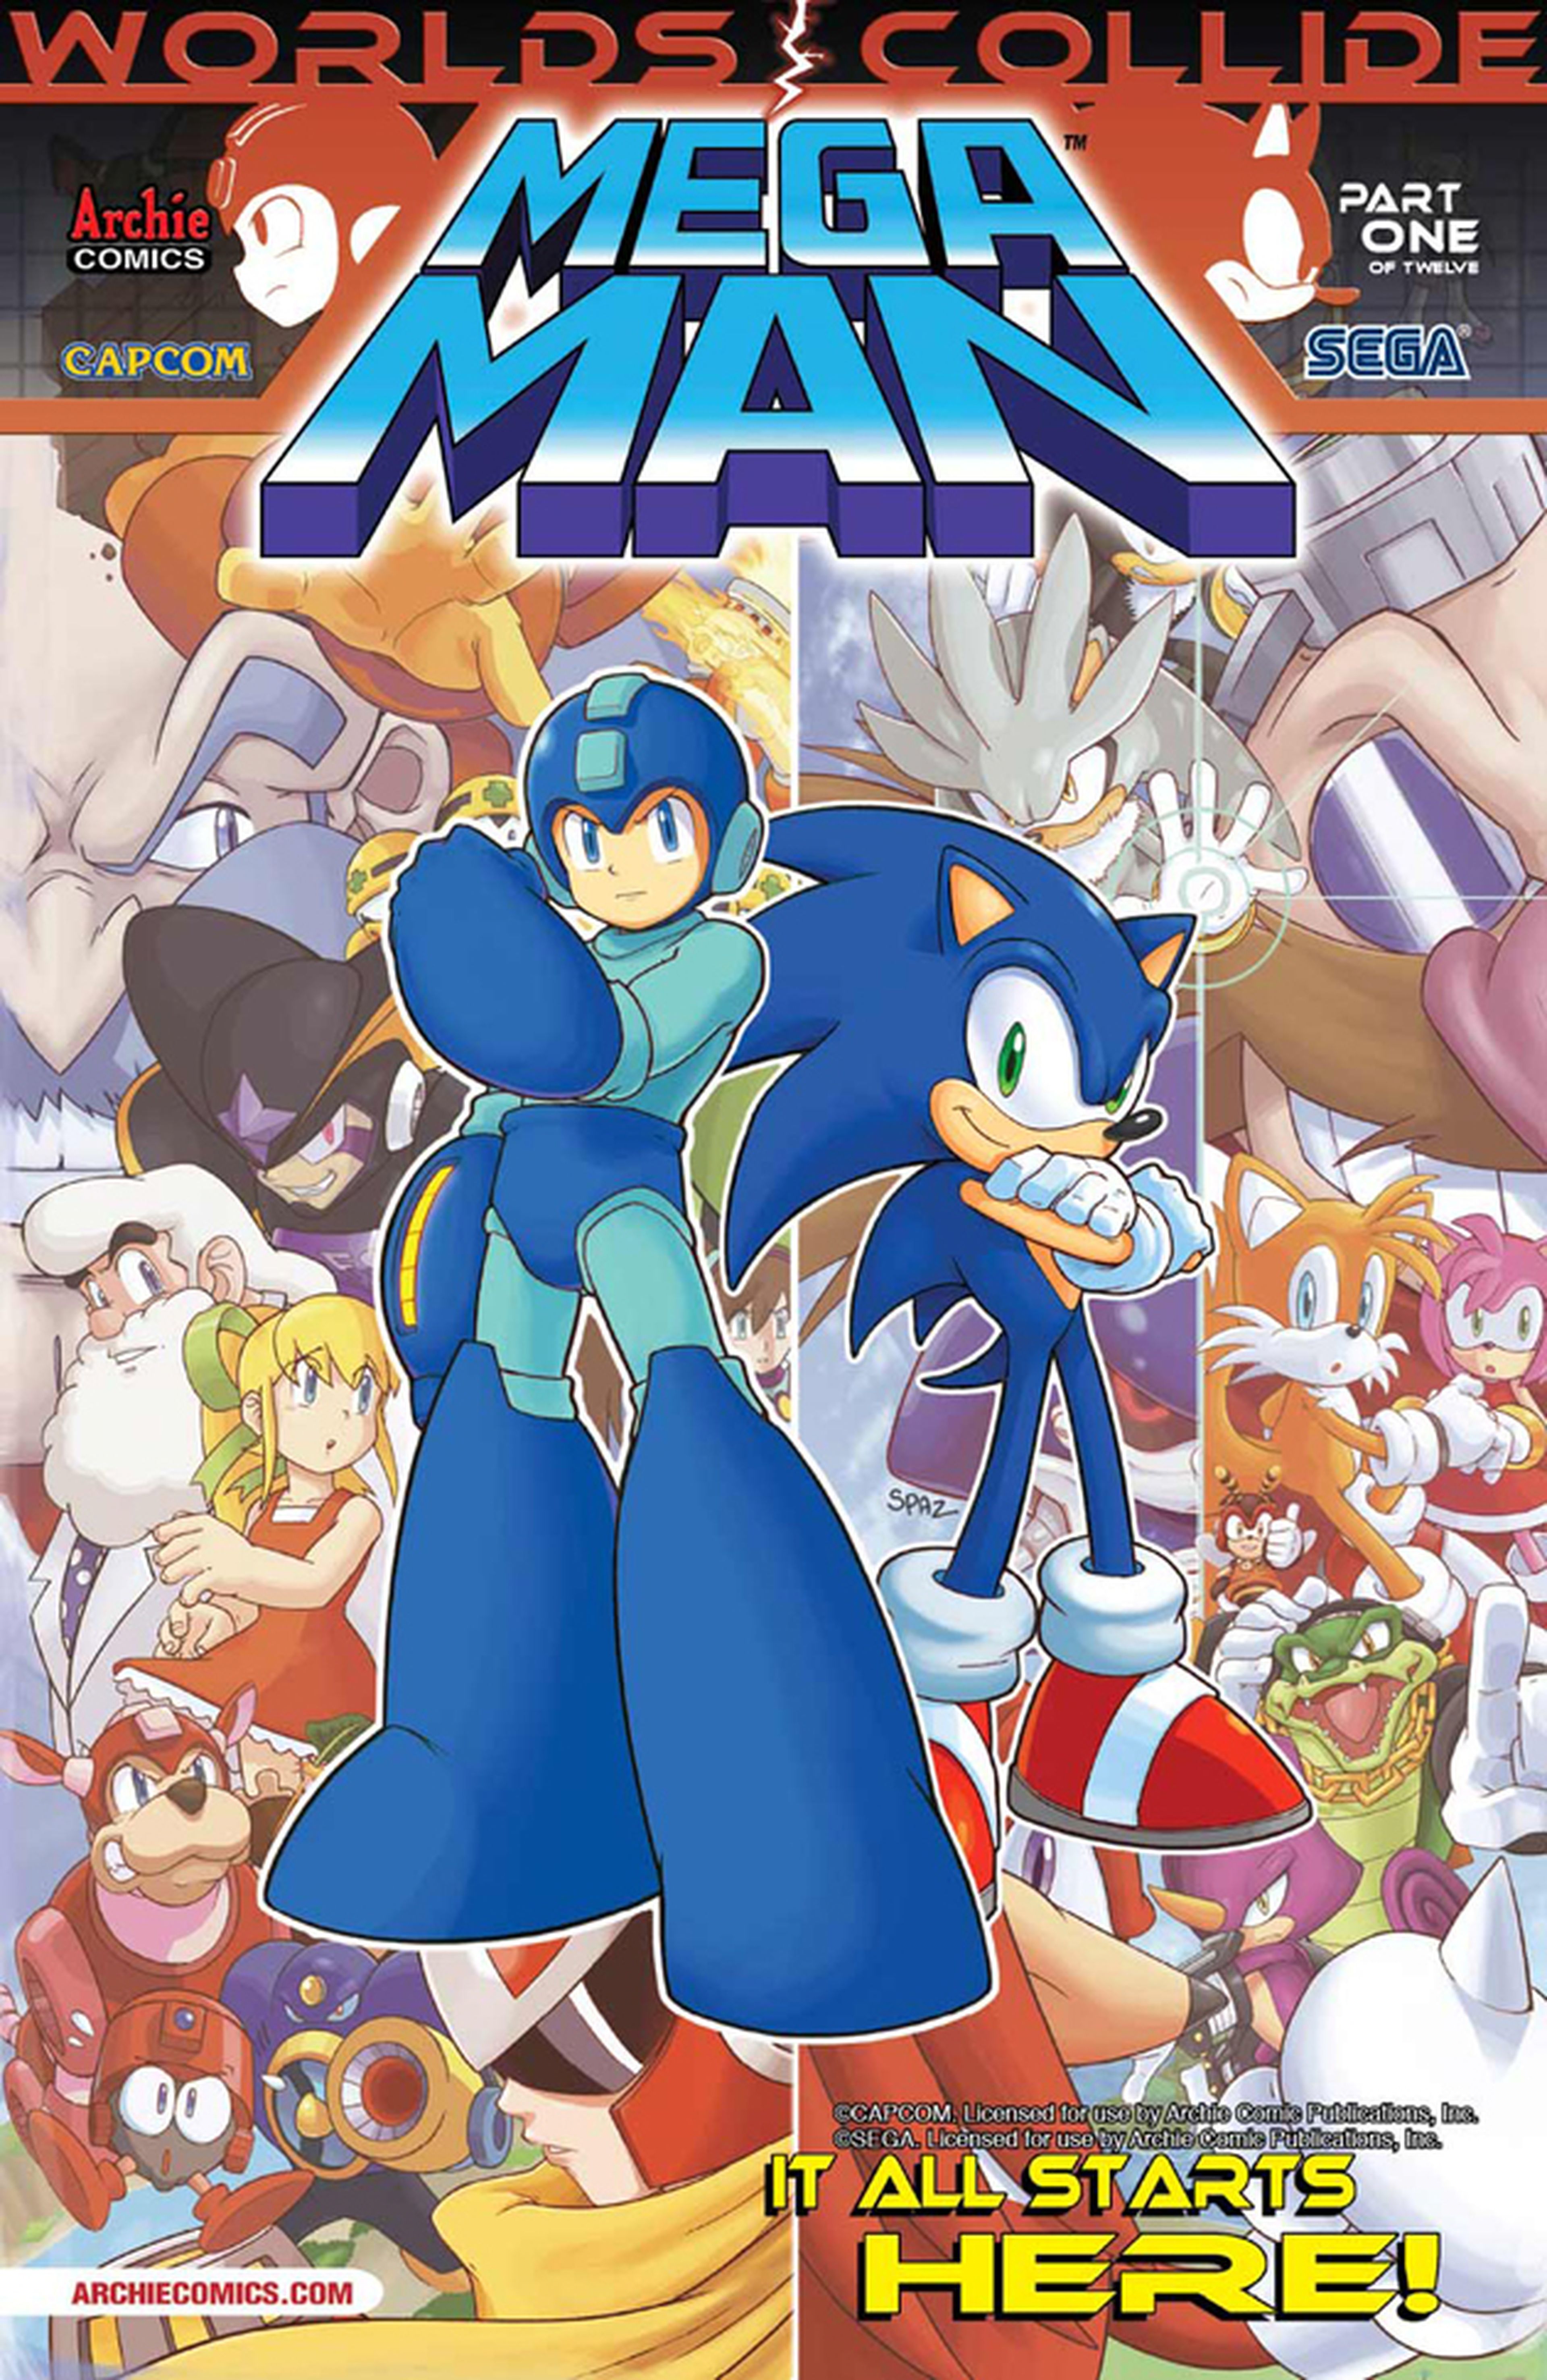 Las Portadas de Megaman - Sonic: Worlds Collide